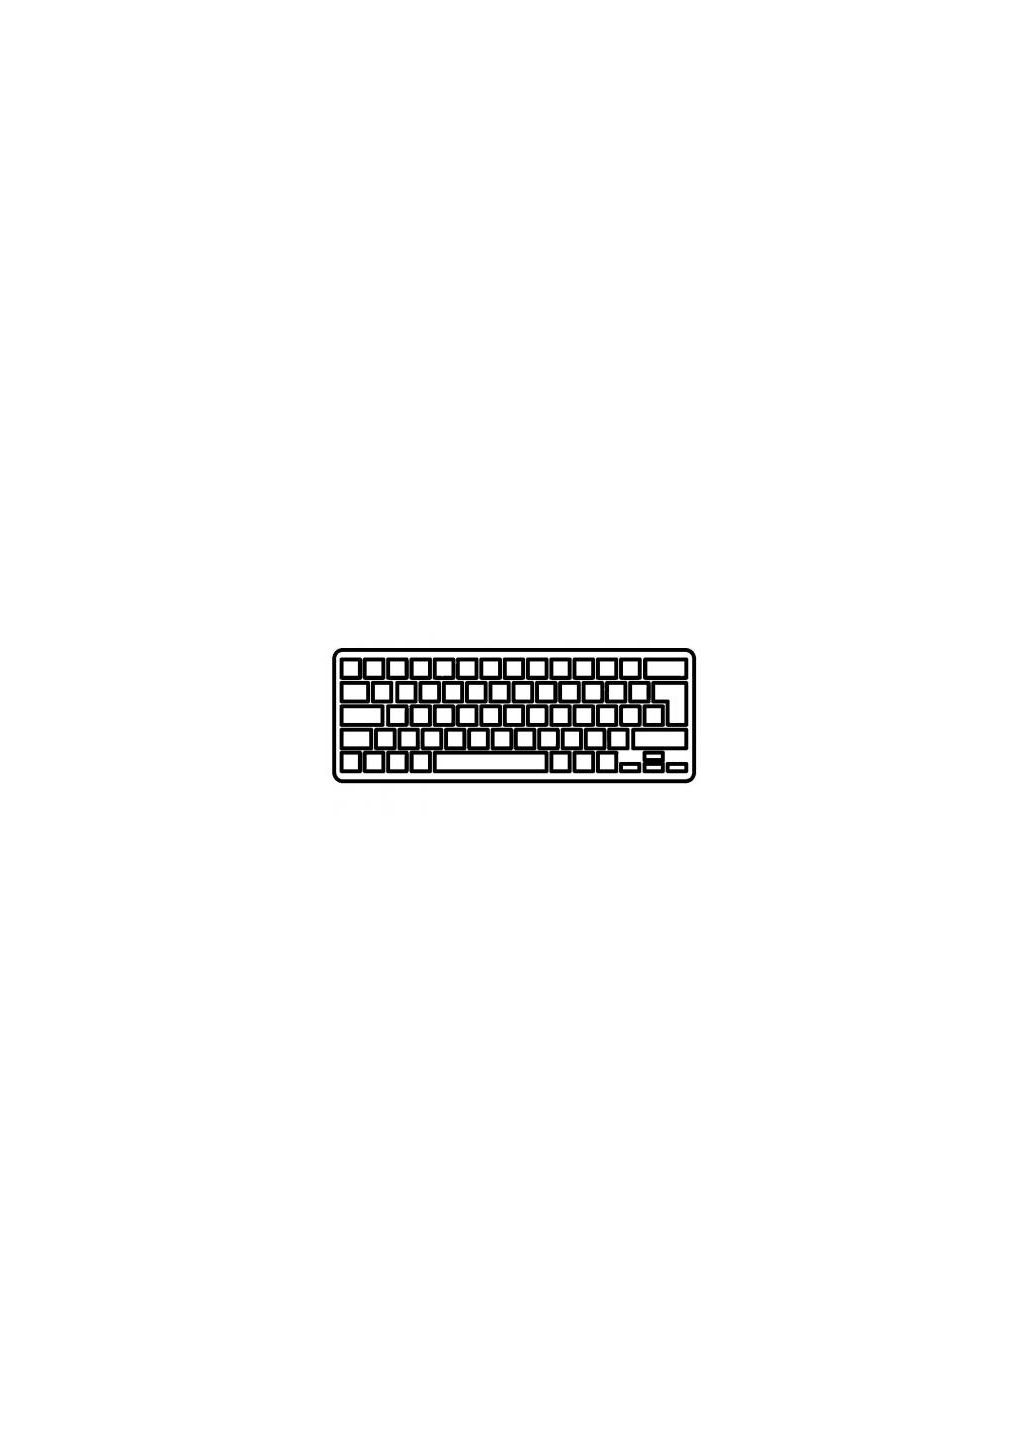 Клавиатура ноутбука Aspire E5473 Series черная без рамки RU (A43950) Acer aspire e5-473 series черная без рамки ua (276707559)